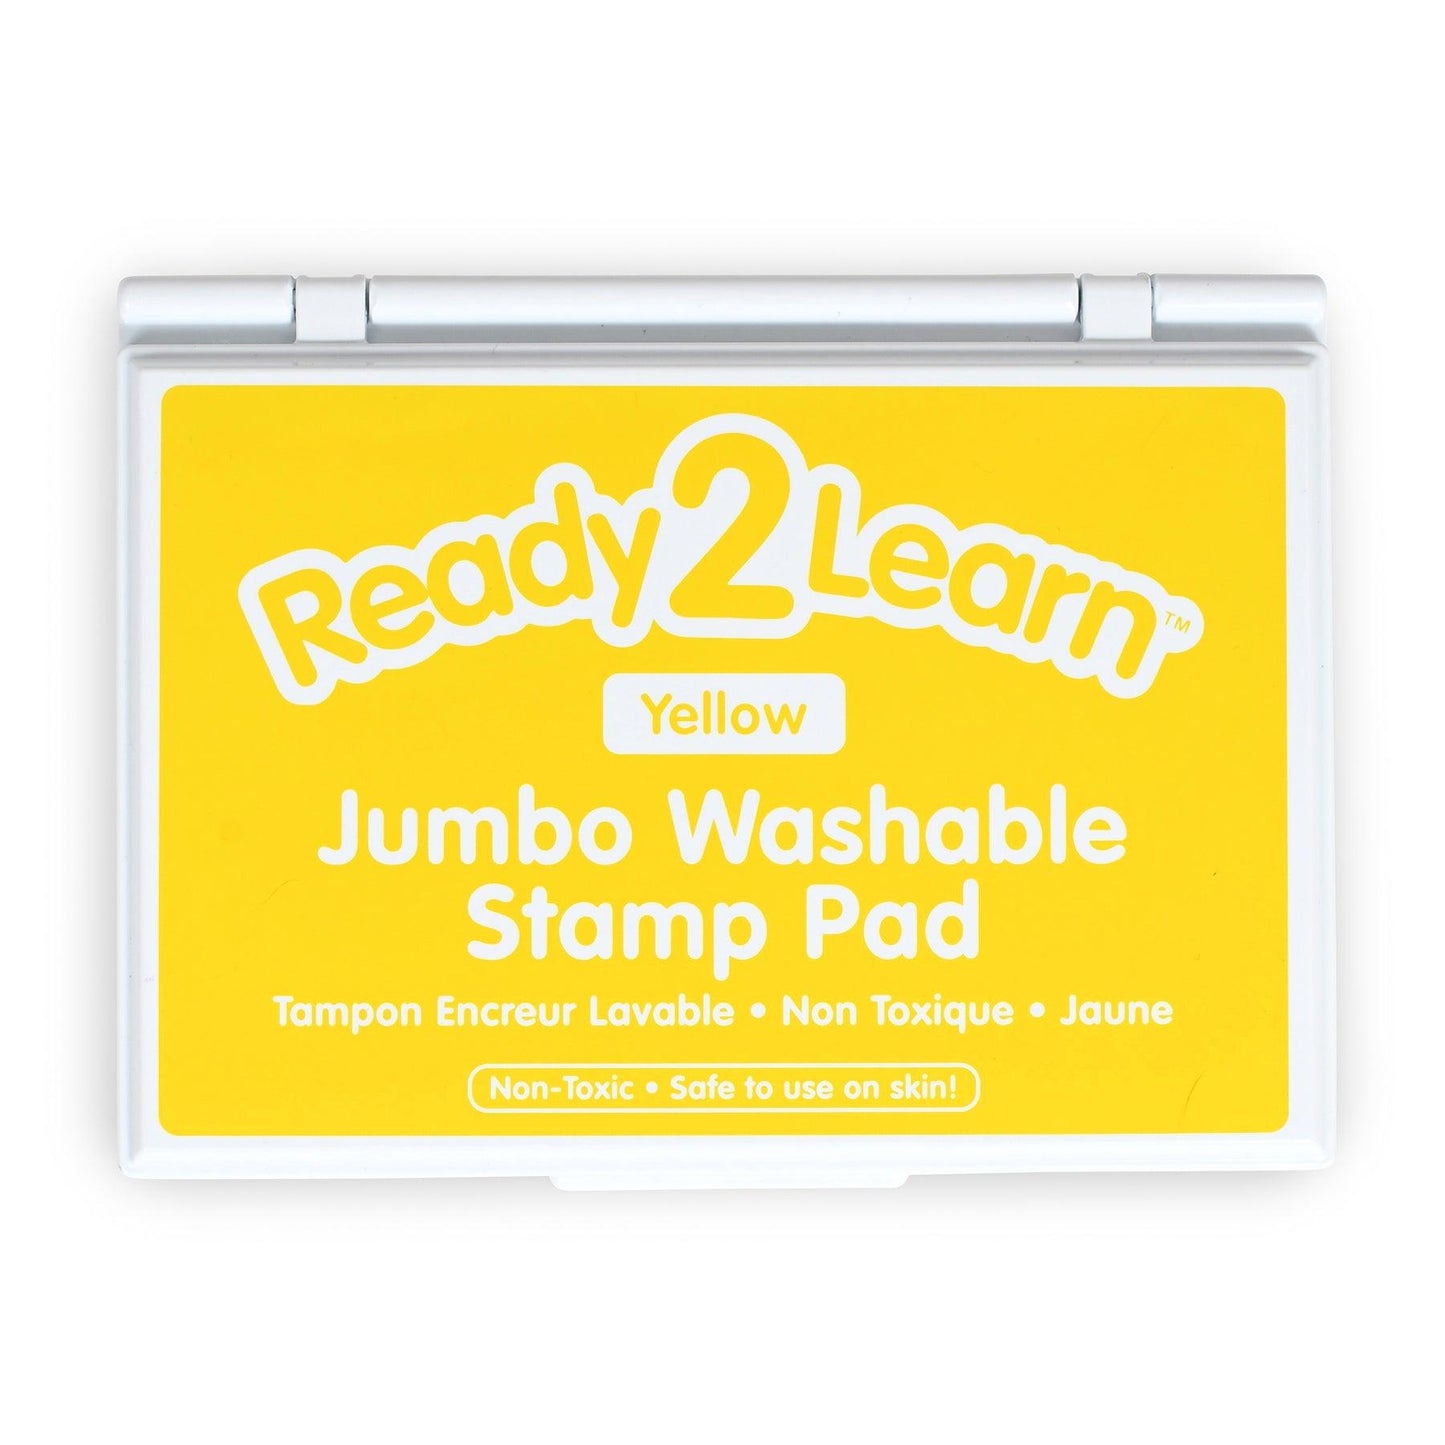 Jumbo Washable Stamp Pad - Yellow - 6.2"L x 4.1"W - Pack of 2 - Loomini